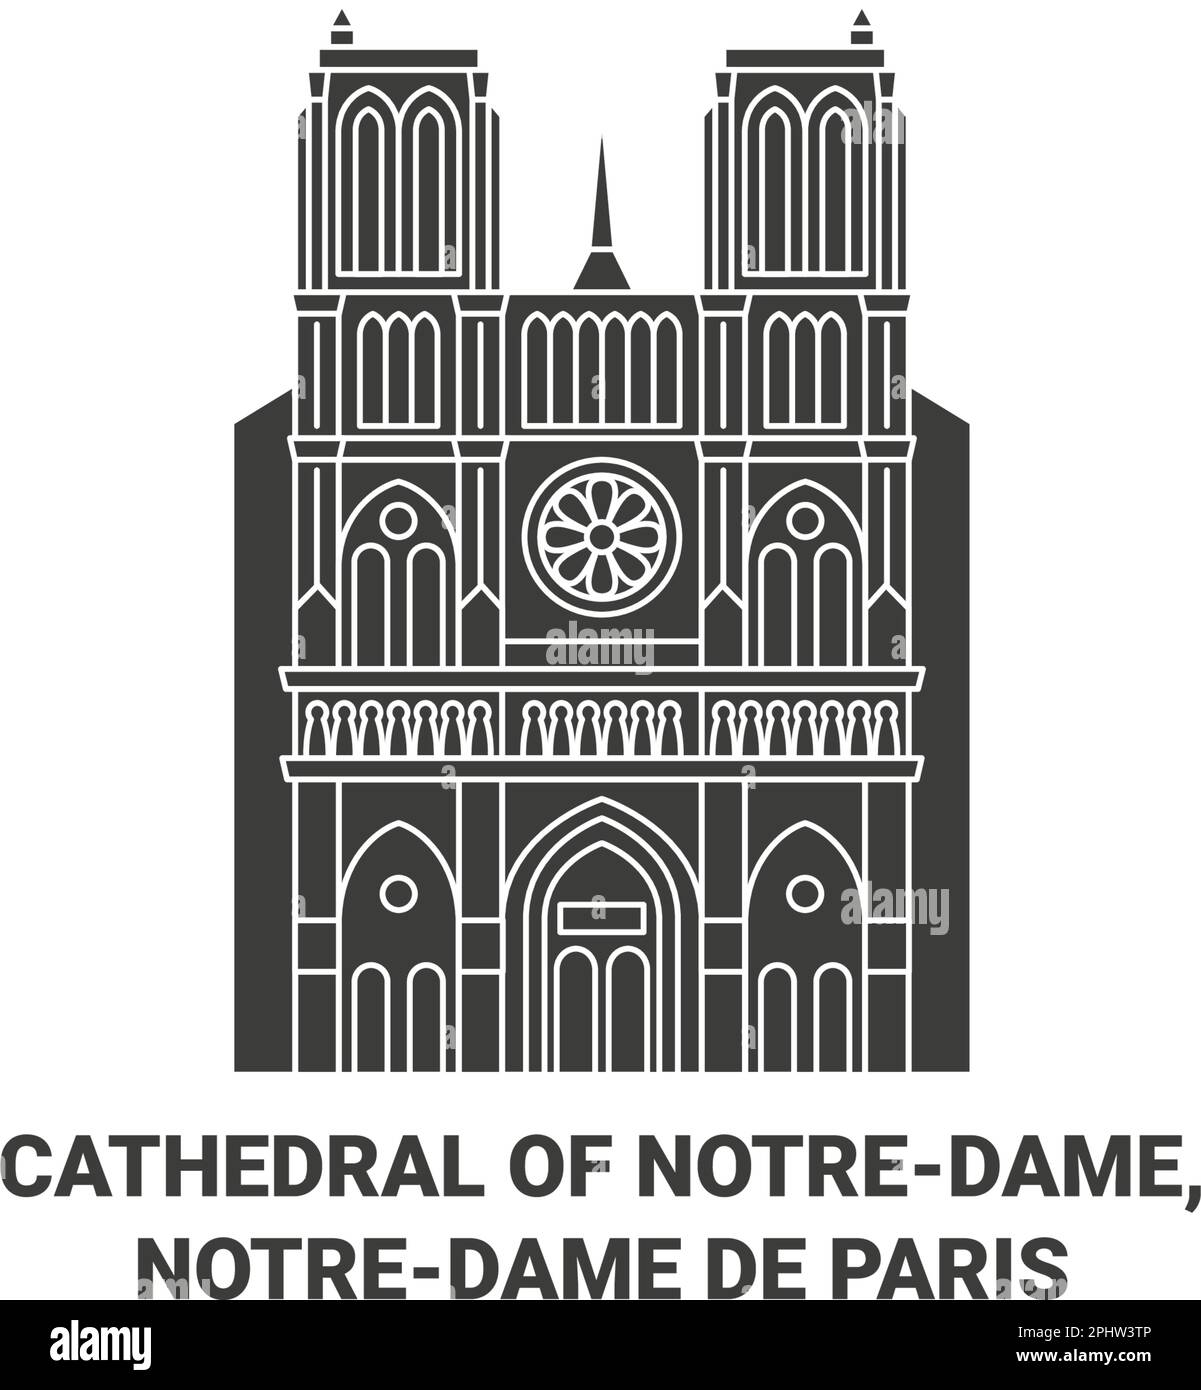 France, Cathédrale de Notredame, Notredame de Paris Voyage repère illustration vecteur Illustration de Vecteur